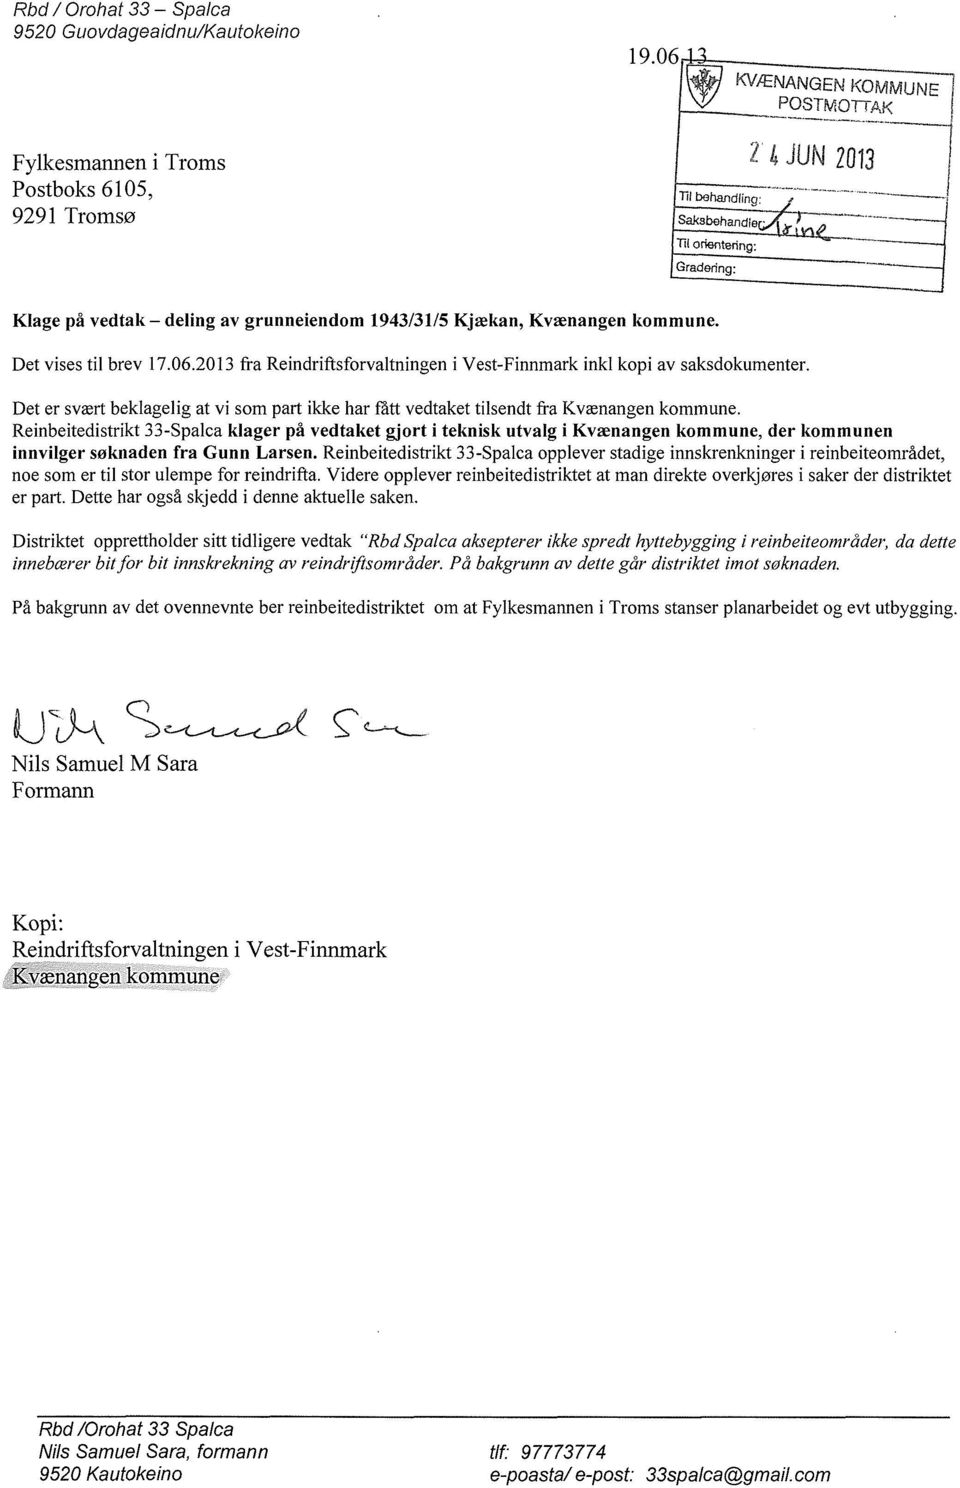 Kjækan, Kvænangen kommune. Det vises til brev 17.06.2013 fra Reindriftsforvaltningen i Vest-Finnmark inkl kopi av saksdokumenter.